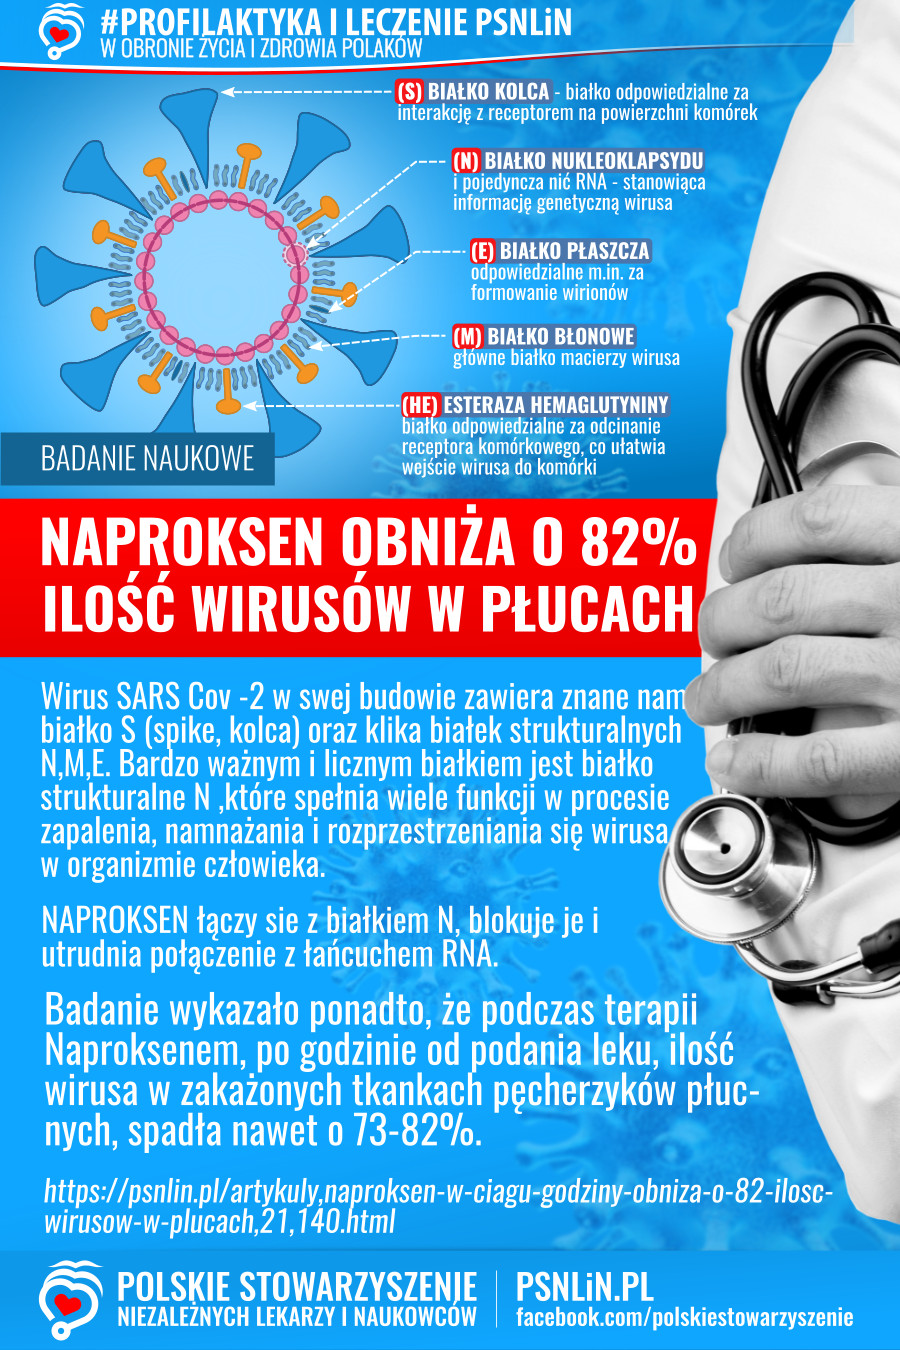 Profilaktyka_i_leczenie_PSNLiN-Naproksen_obniża_o_82_procent_ilość_wirusa_w_płucach